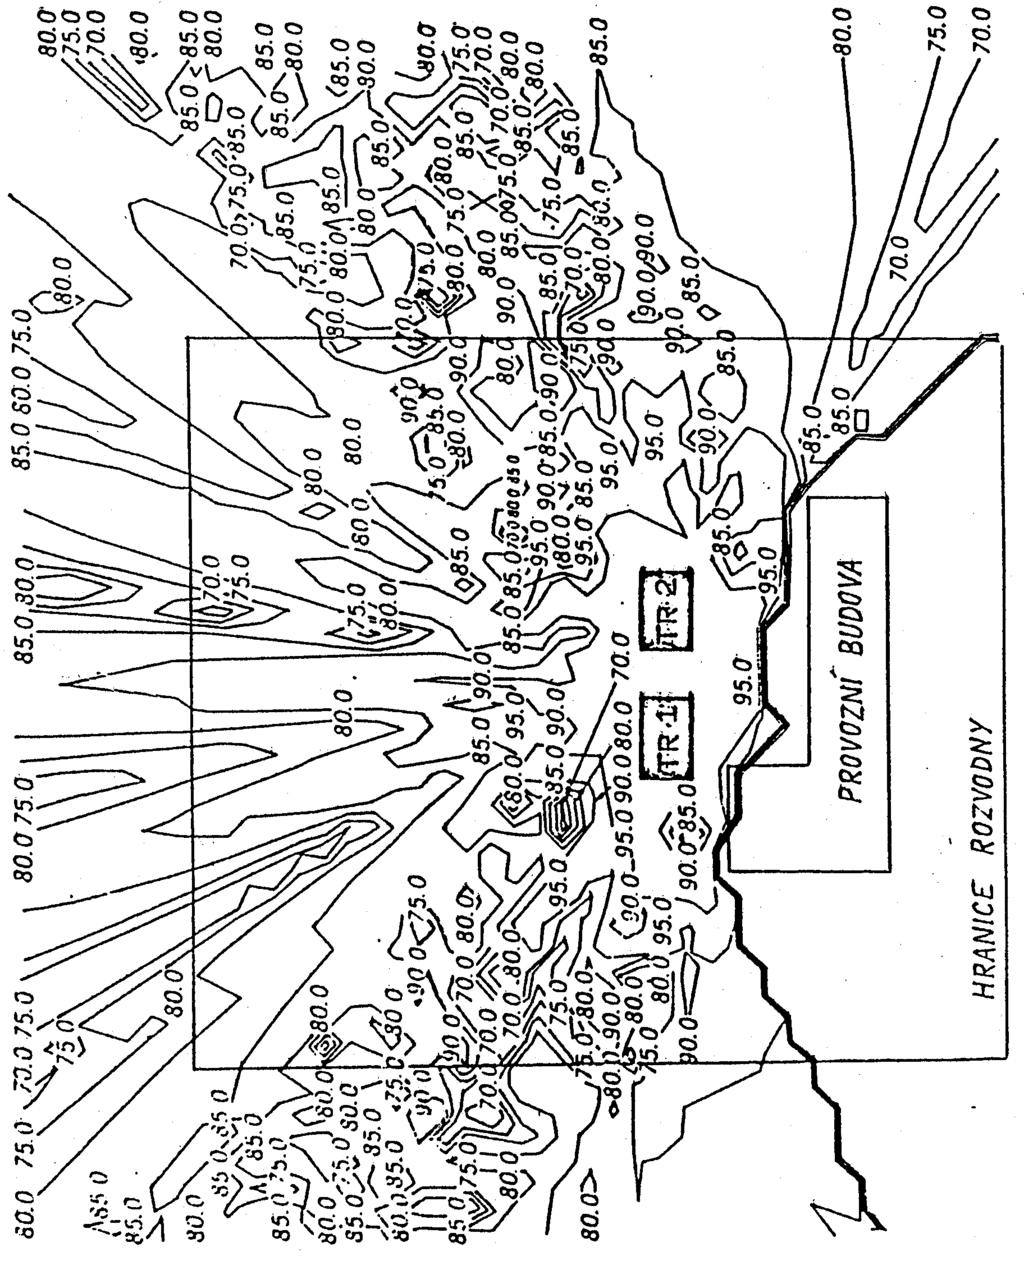 Obrázek 4 - Přesná mapa hladiny akustického tlaku A vyzařovaného z venkovní